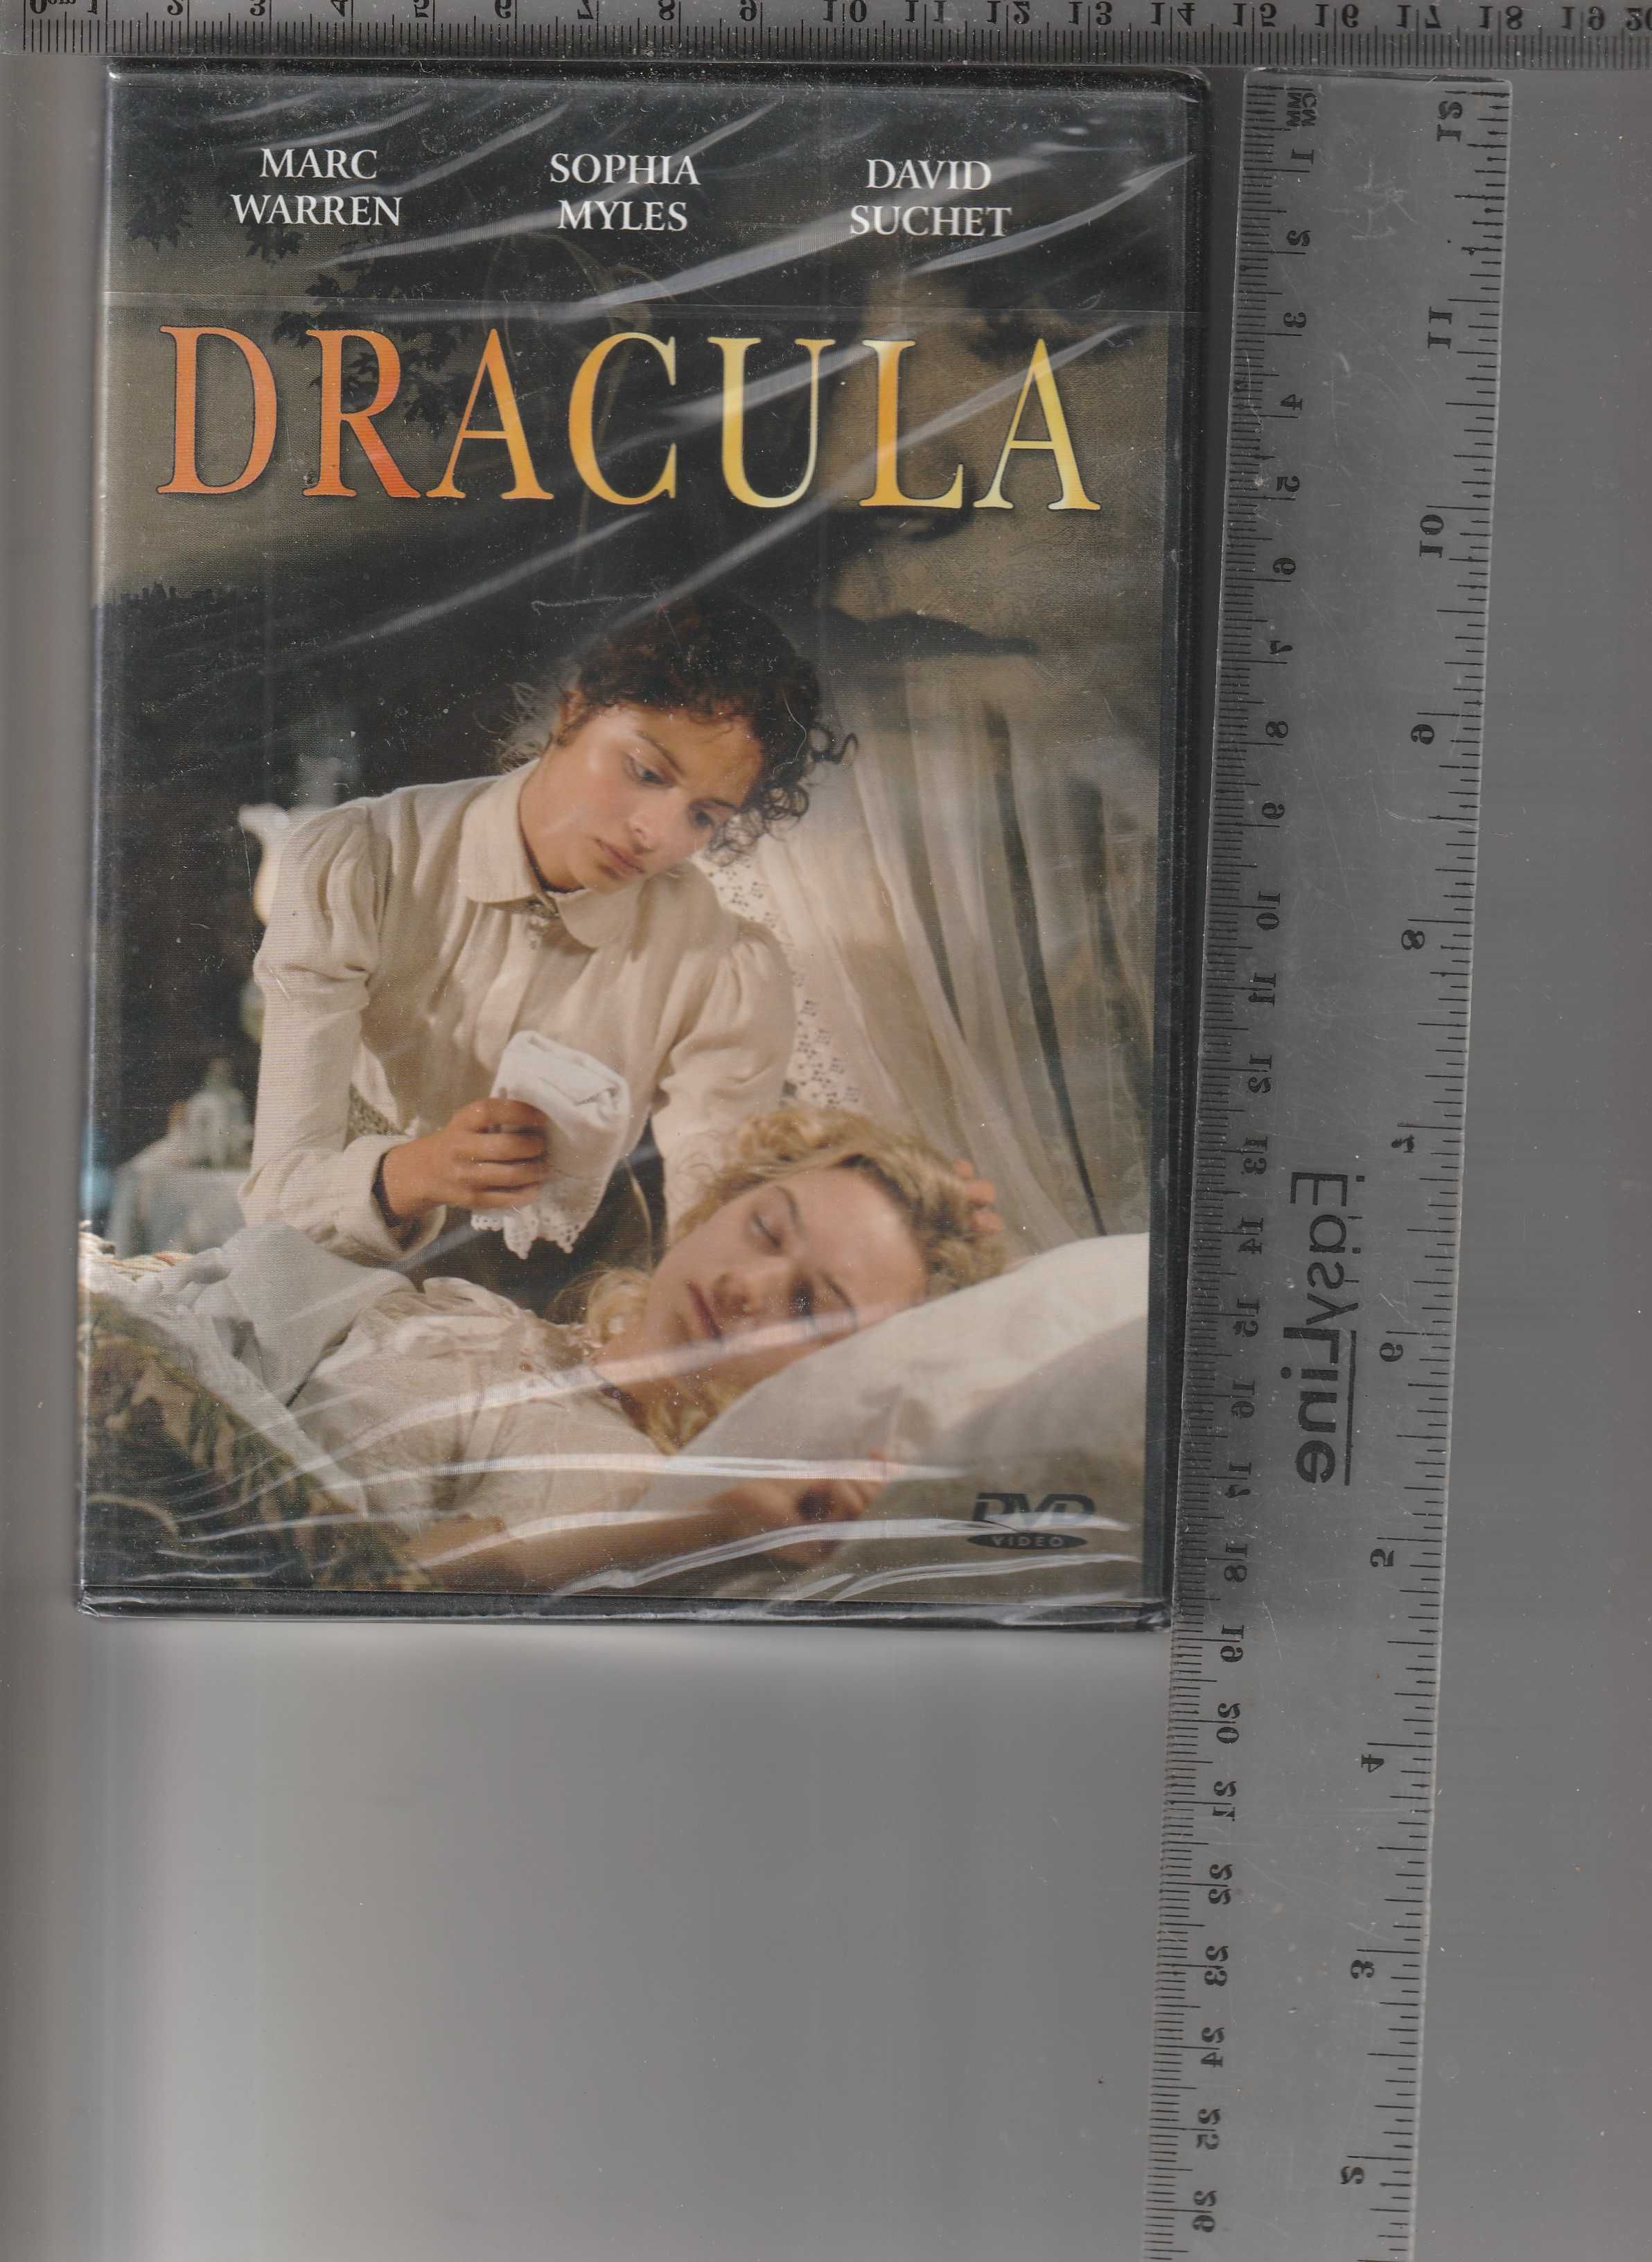 Dracula Marc Warren Sophia Myles DVD